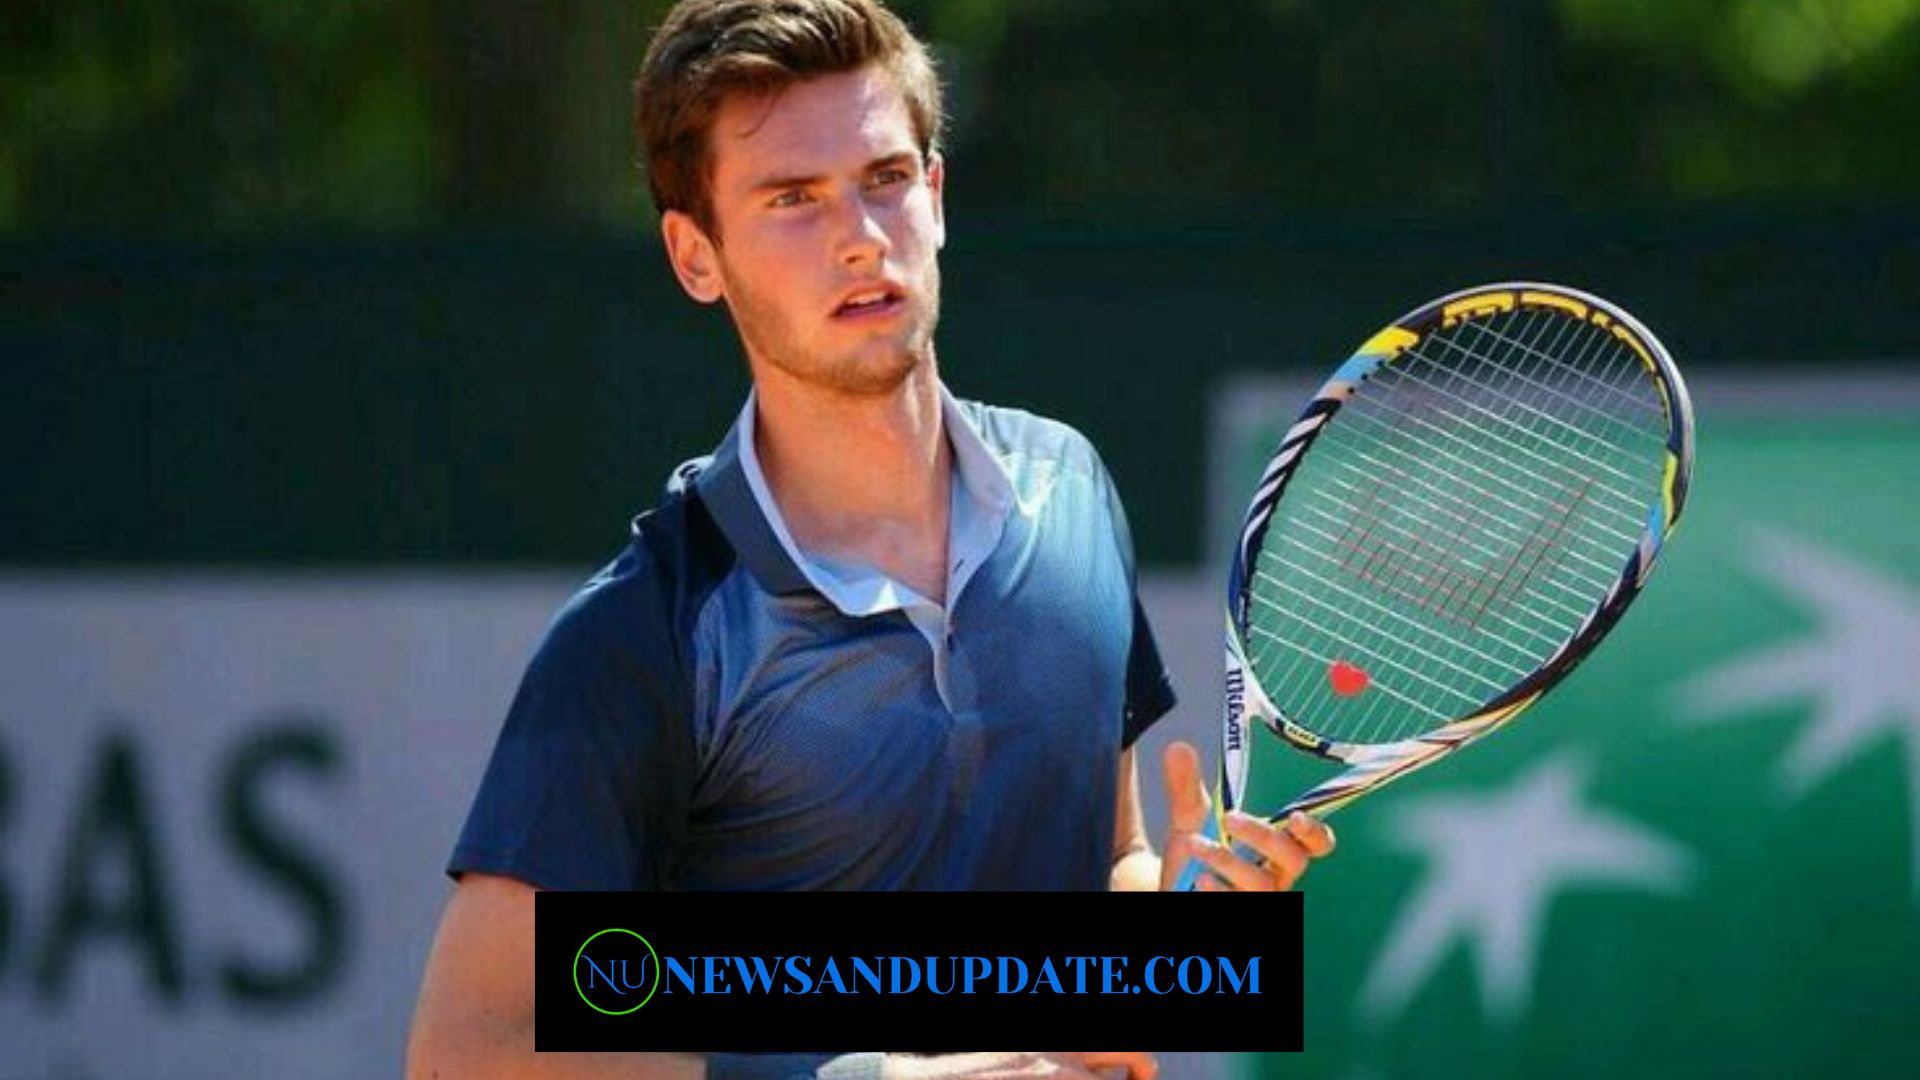 Who Is Quentin Halys Girlfriend? He Wins Dan Evans In Wimbledon Showdown